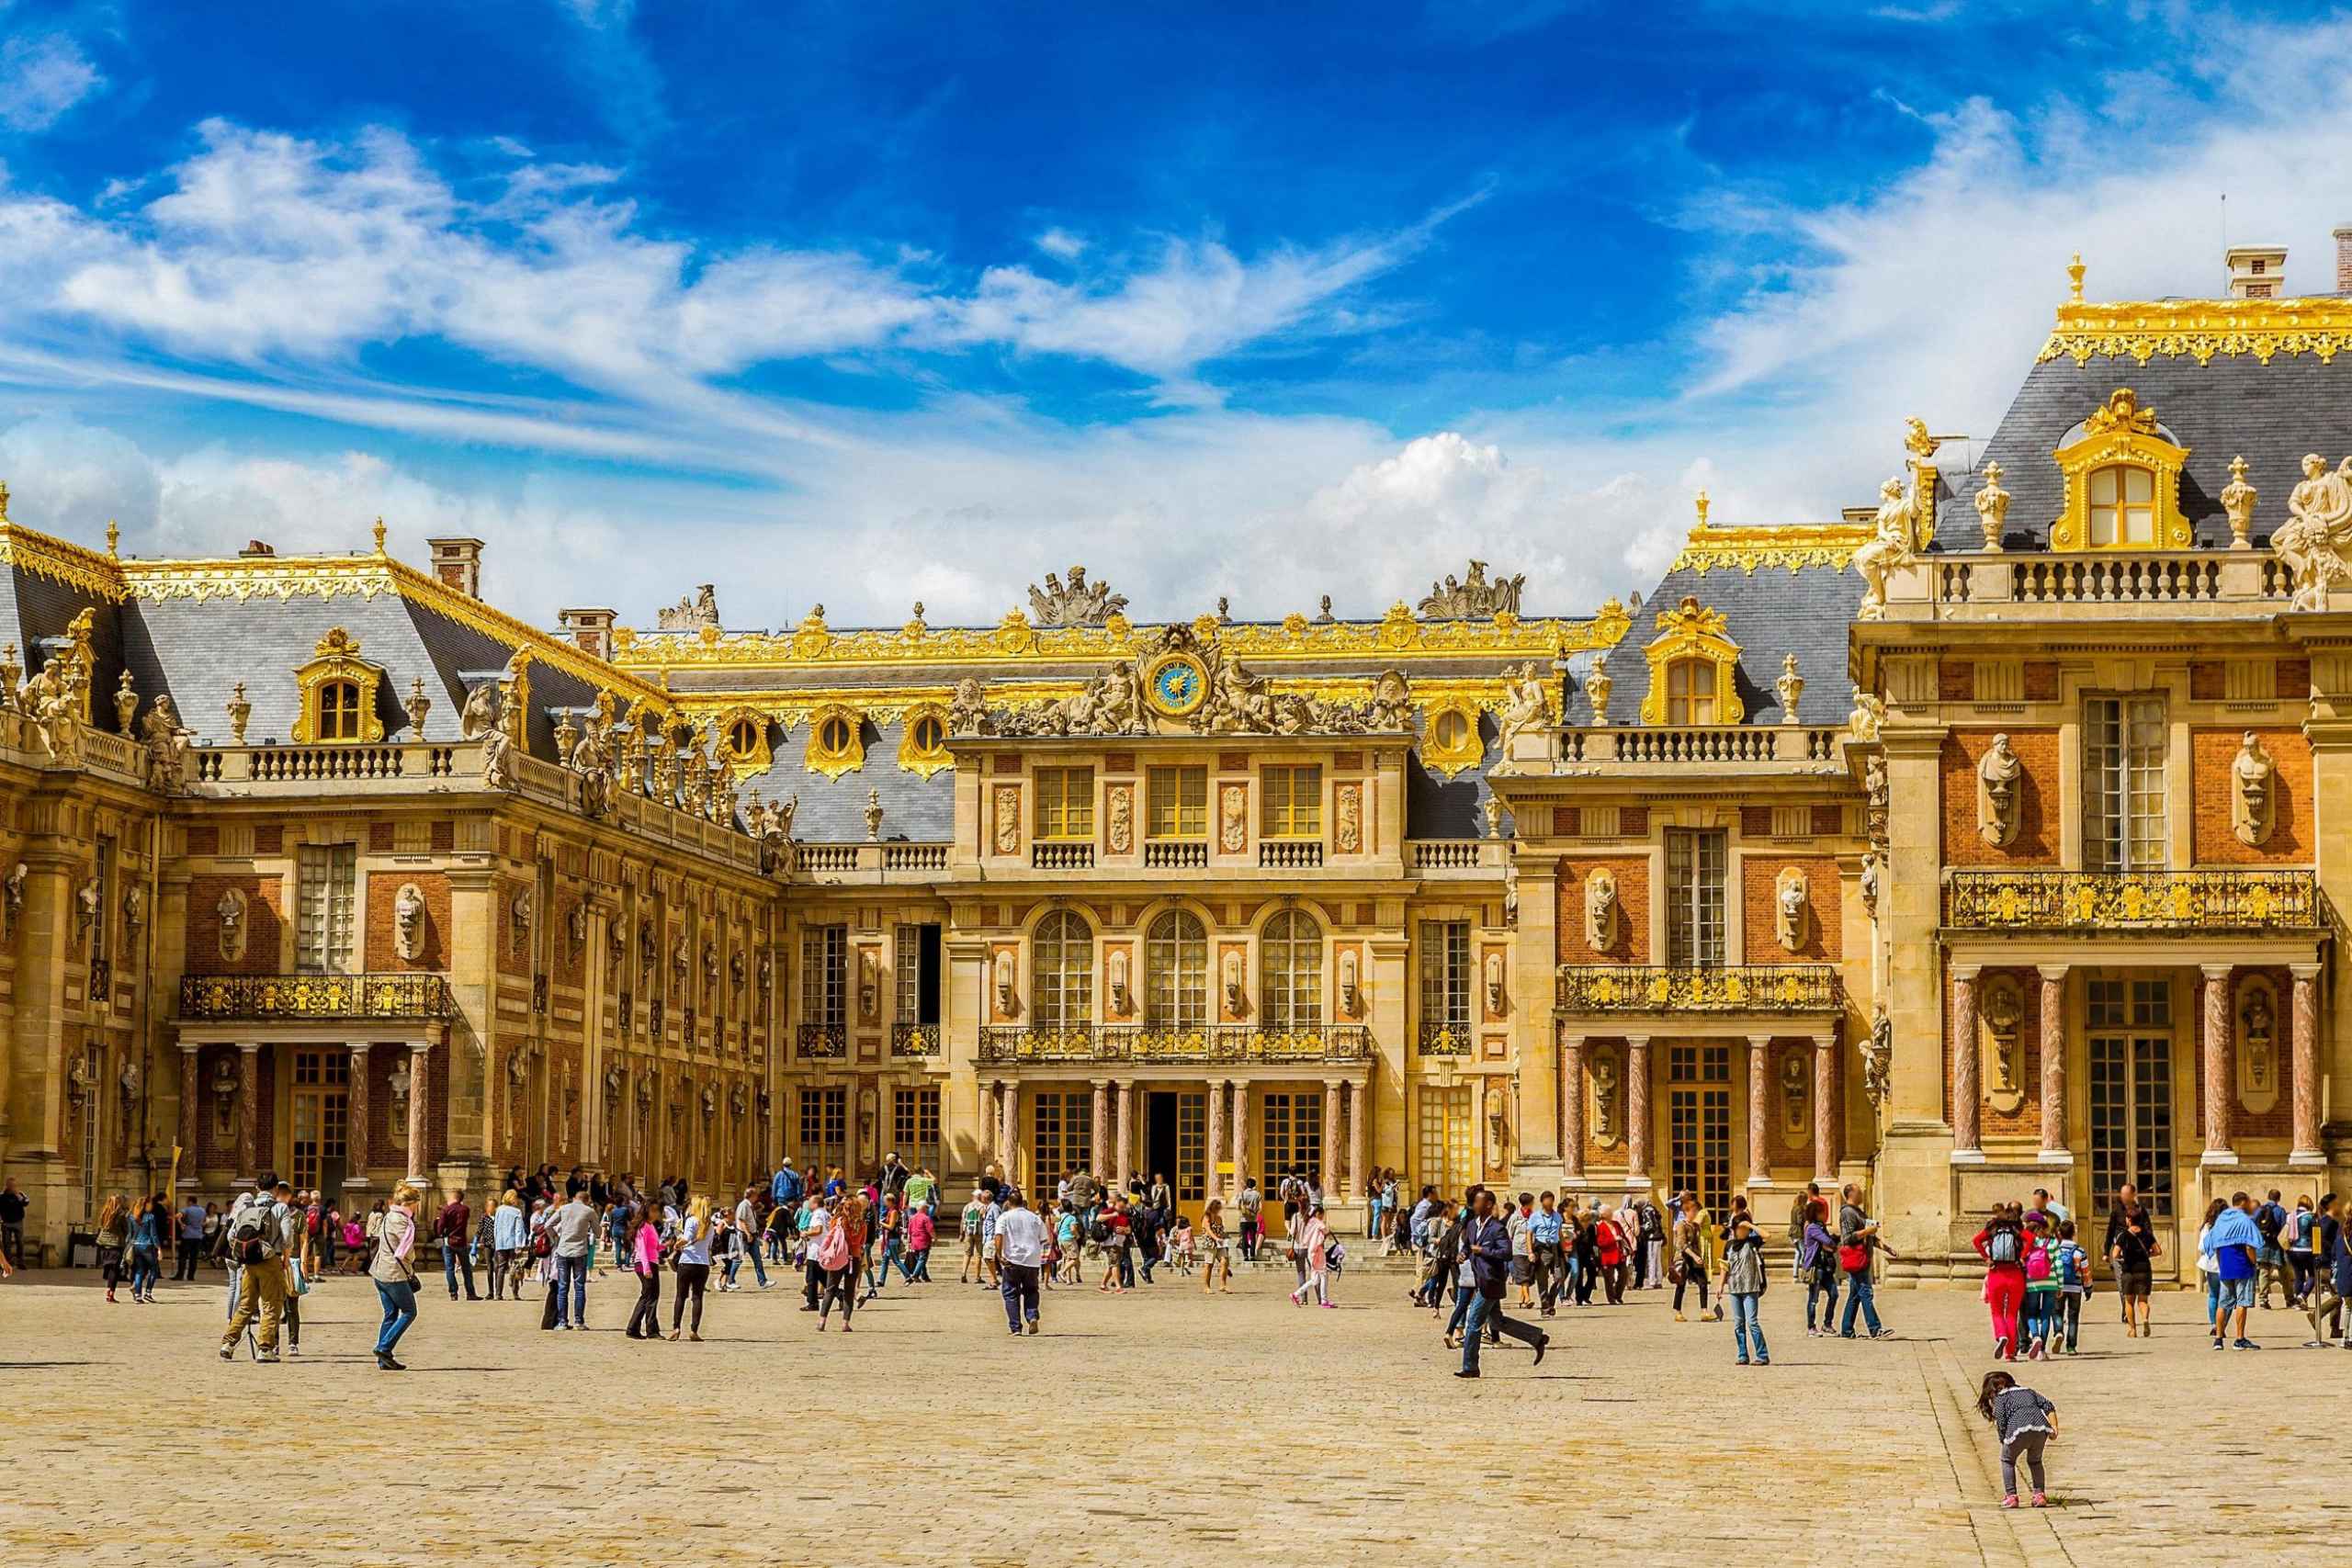 Chateau de versailles. Версальский дворец в Париже. Версальский дворец Версаль Франция. Достопримечательности Парижа Версаль. Франция 17 век Версаль.